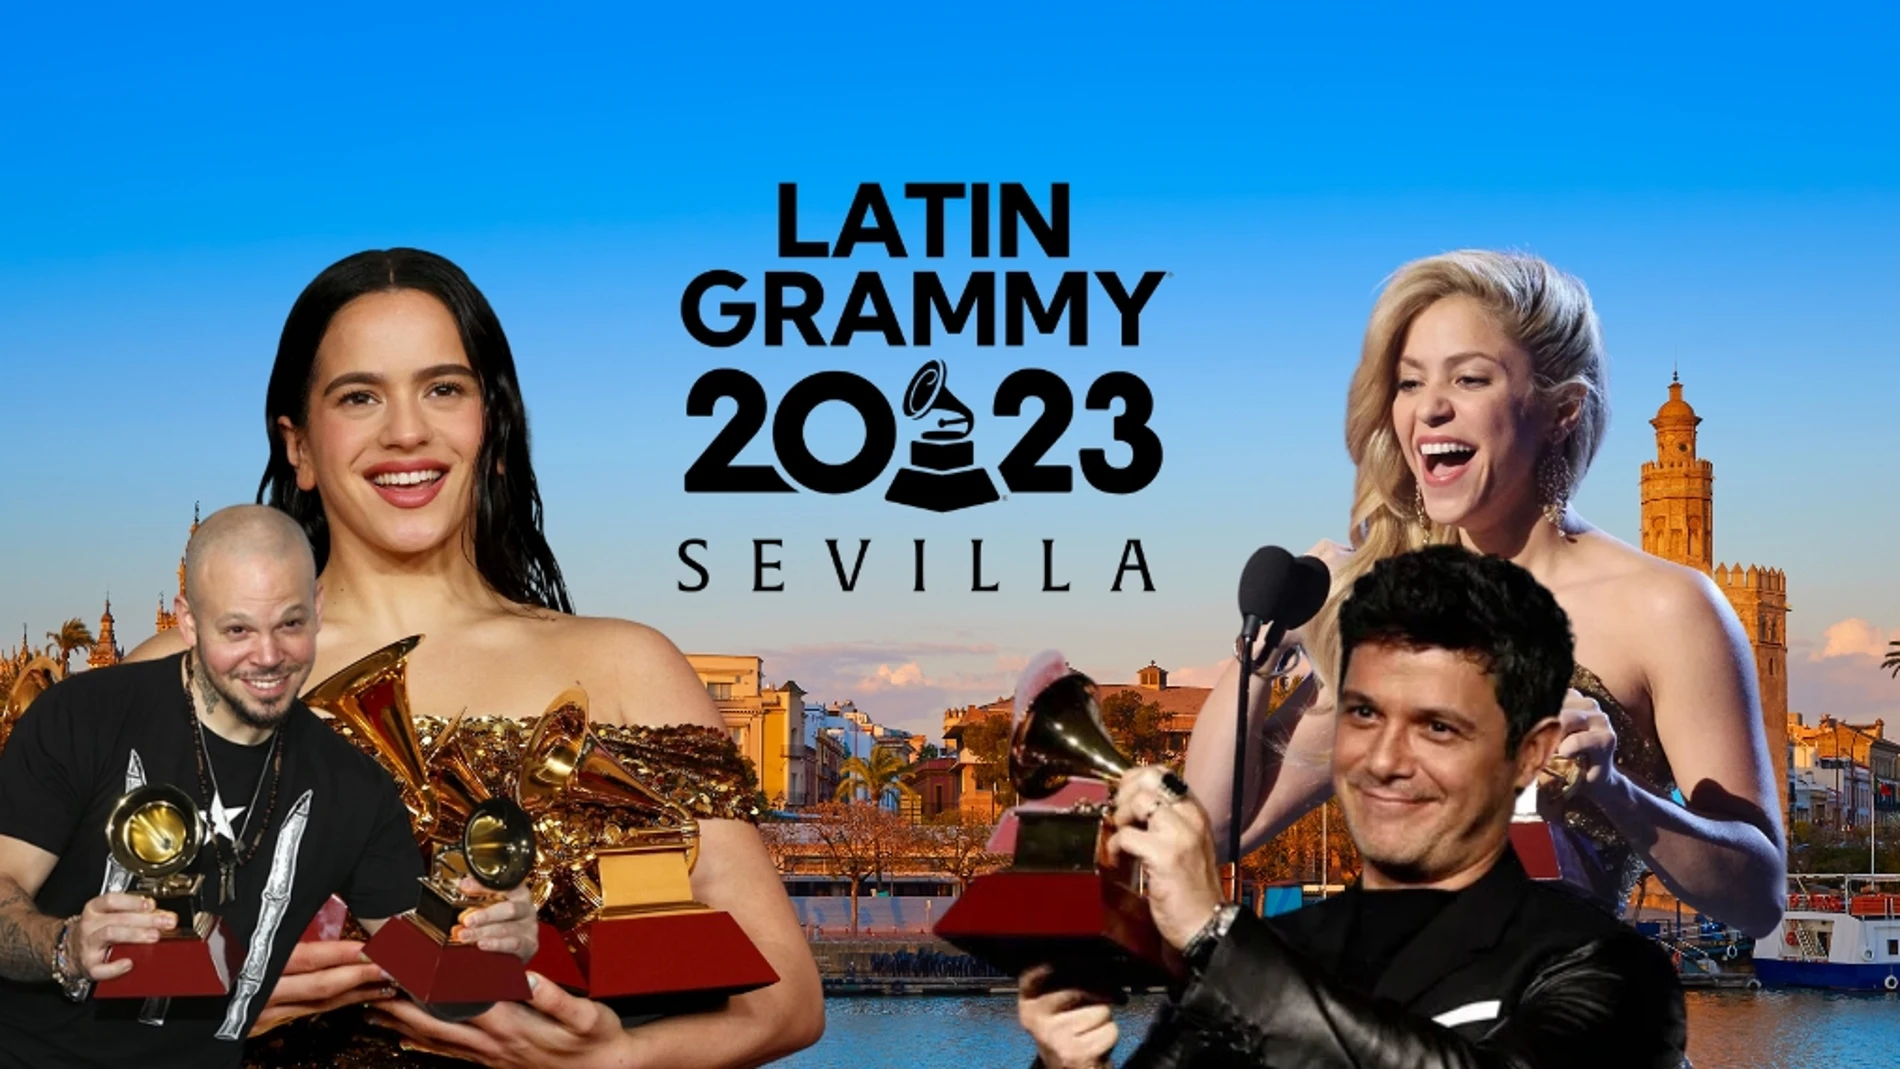 Todo lo que tienes que saber de los Latin Grammy 2023 en Sevilla: horas, fechas, principales nominados, emisiones